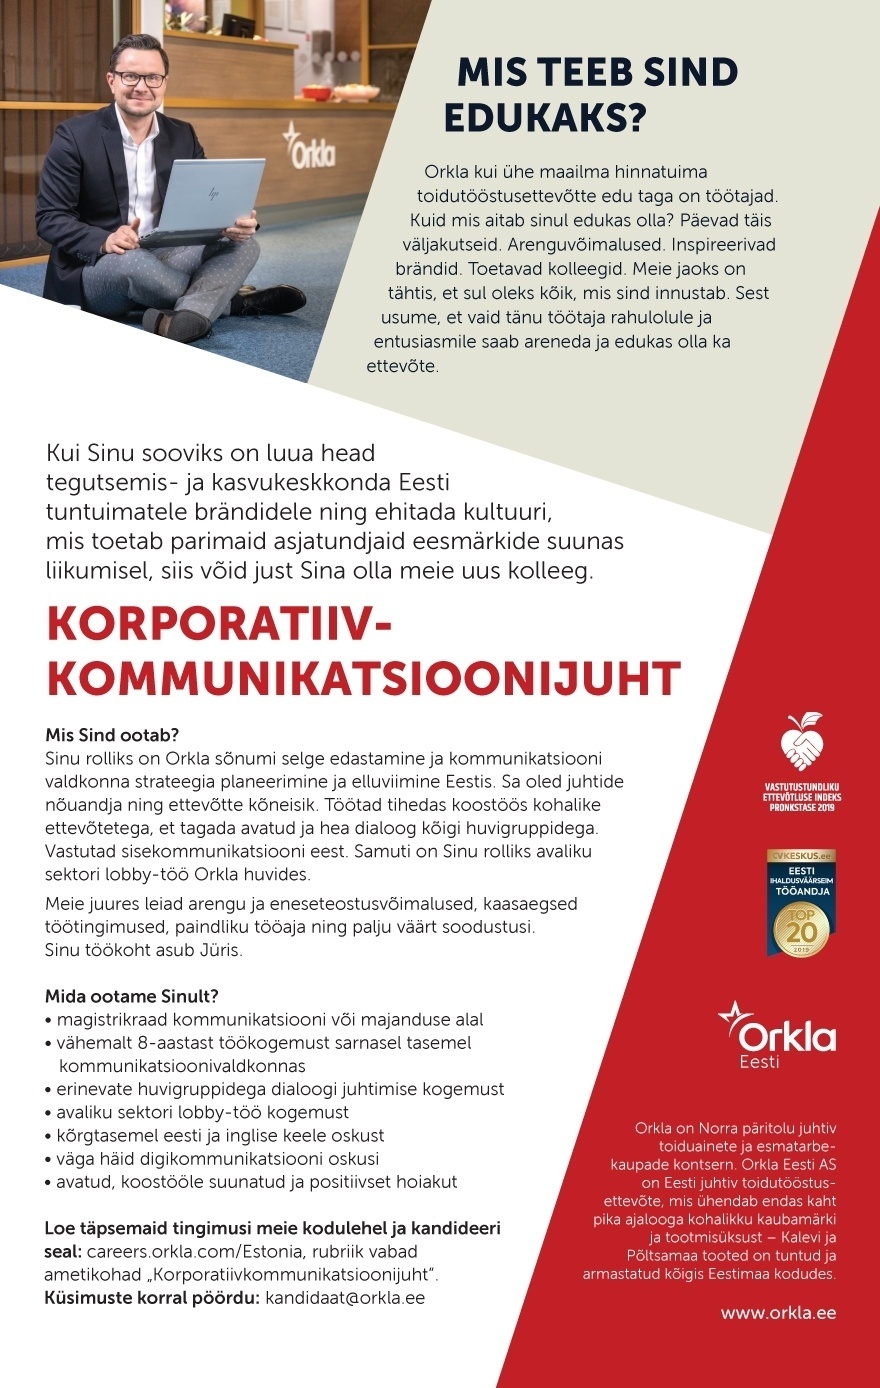 Orkla Eesti AS (Kalev ja Põltsamaa Felix) Korporatiivkommunikatsioonijuht